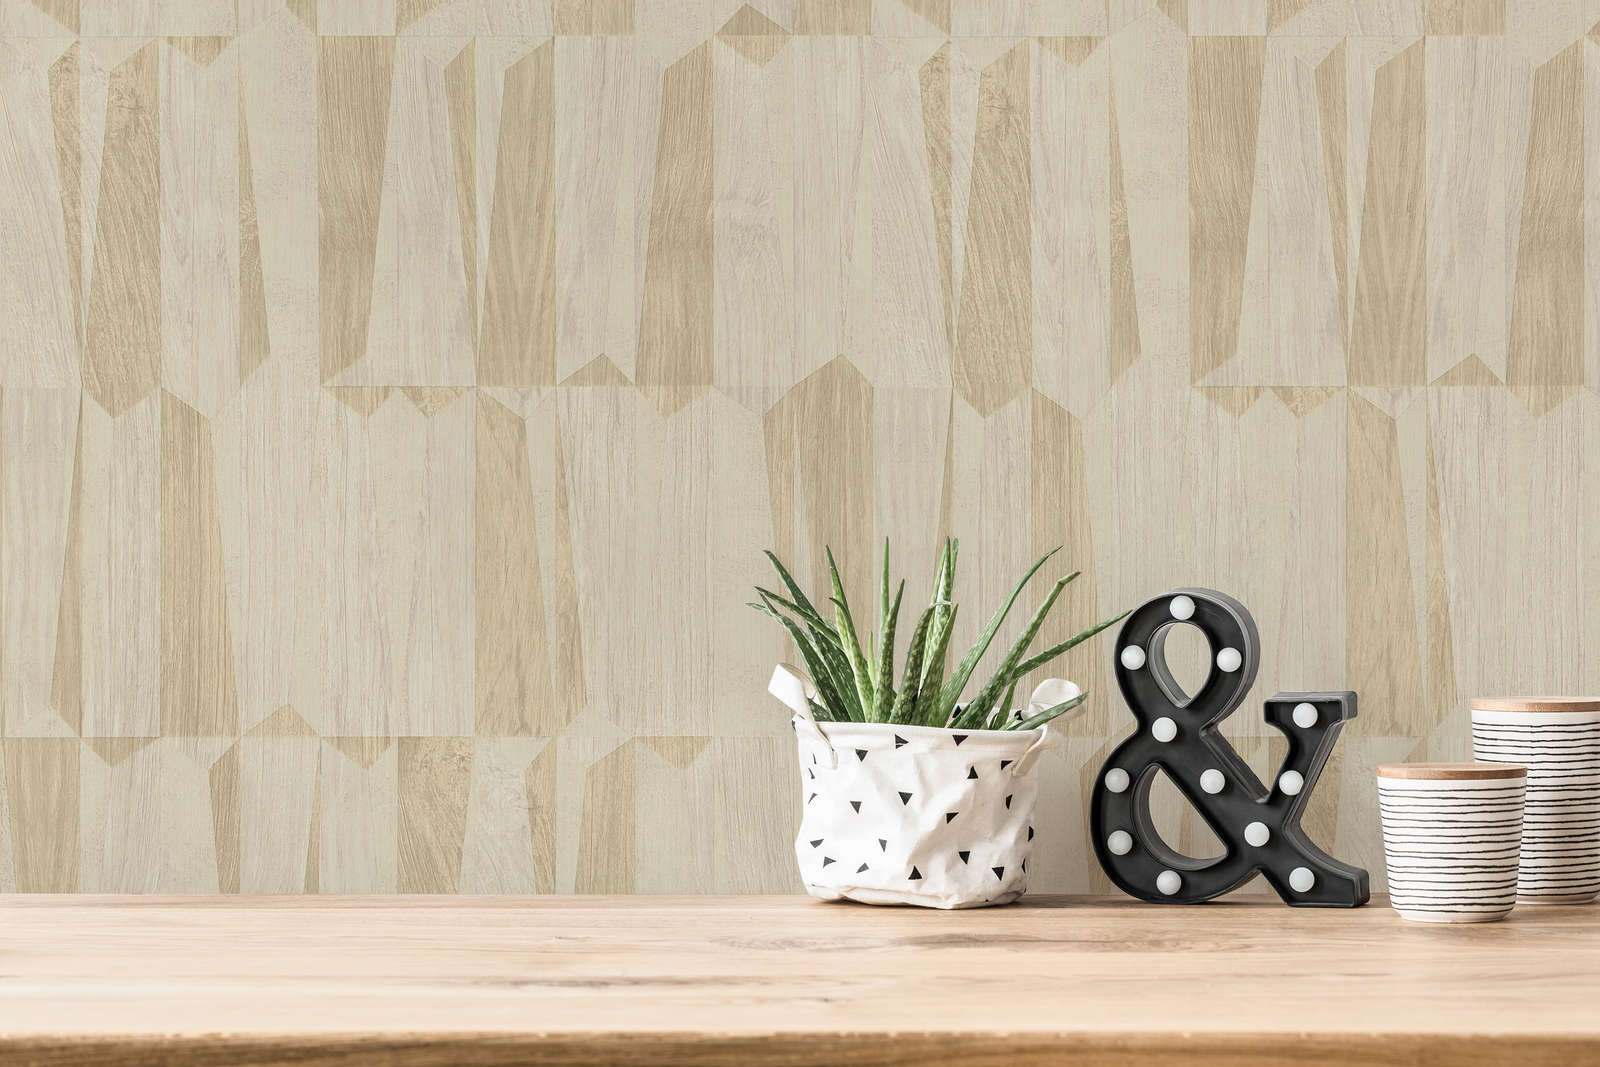             Metallic wallpaper with wood look in facet pattern - beige, grey
        